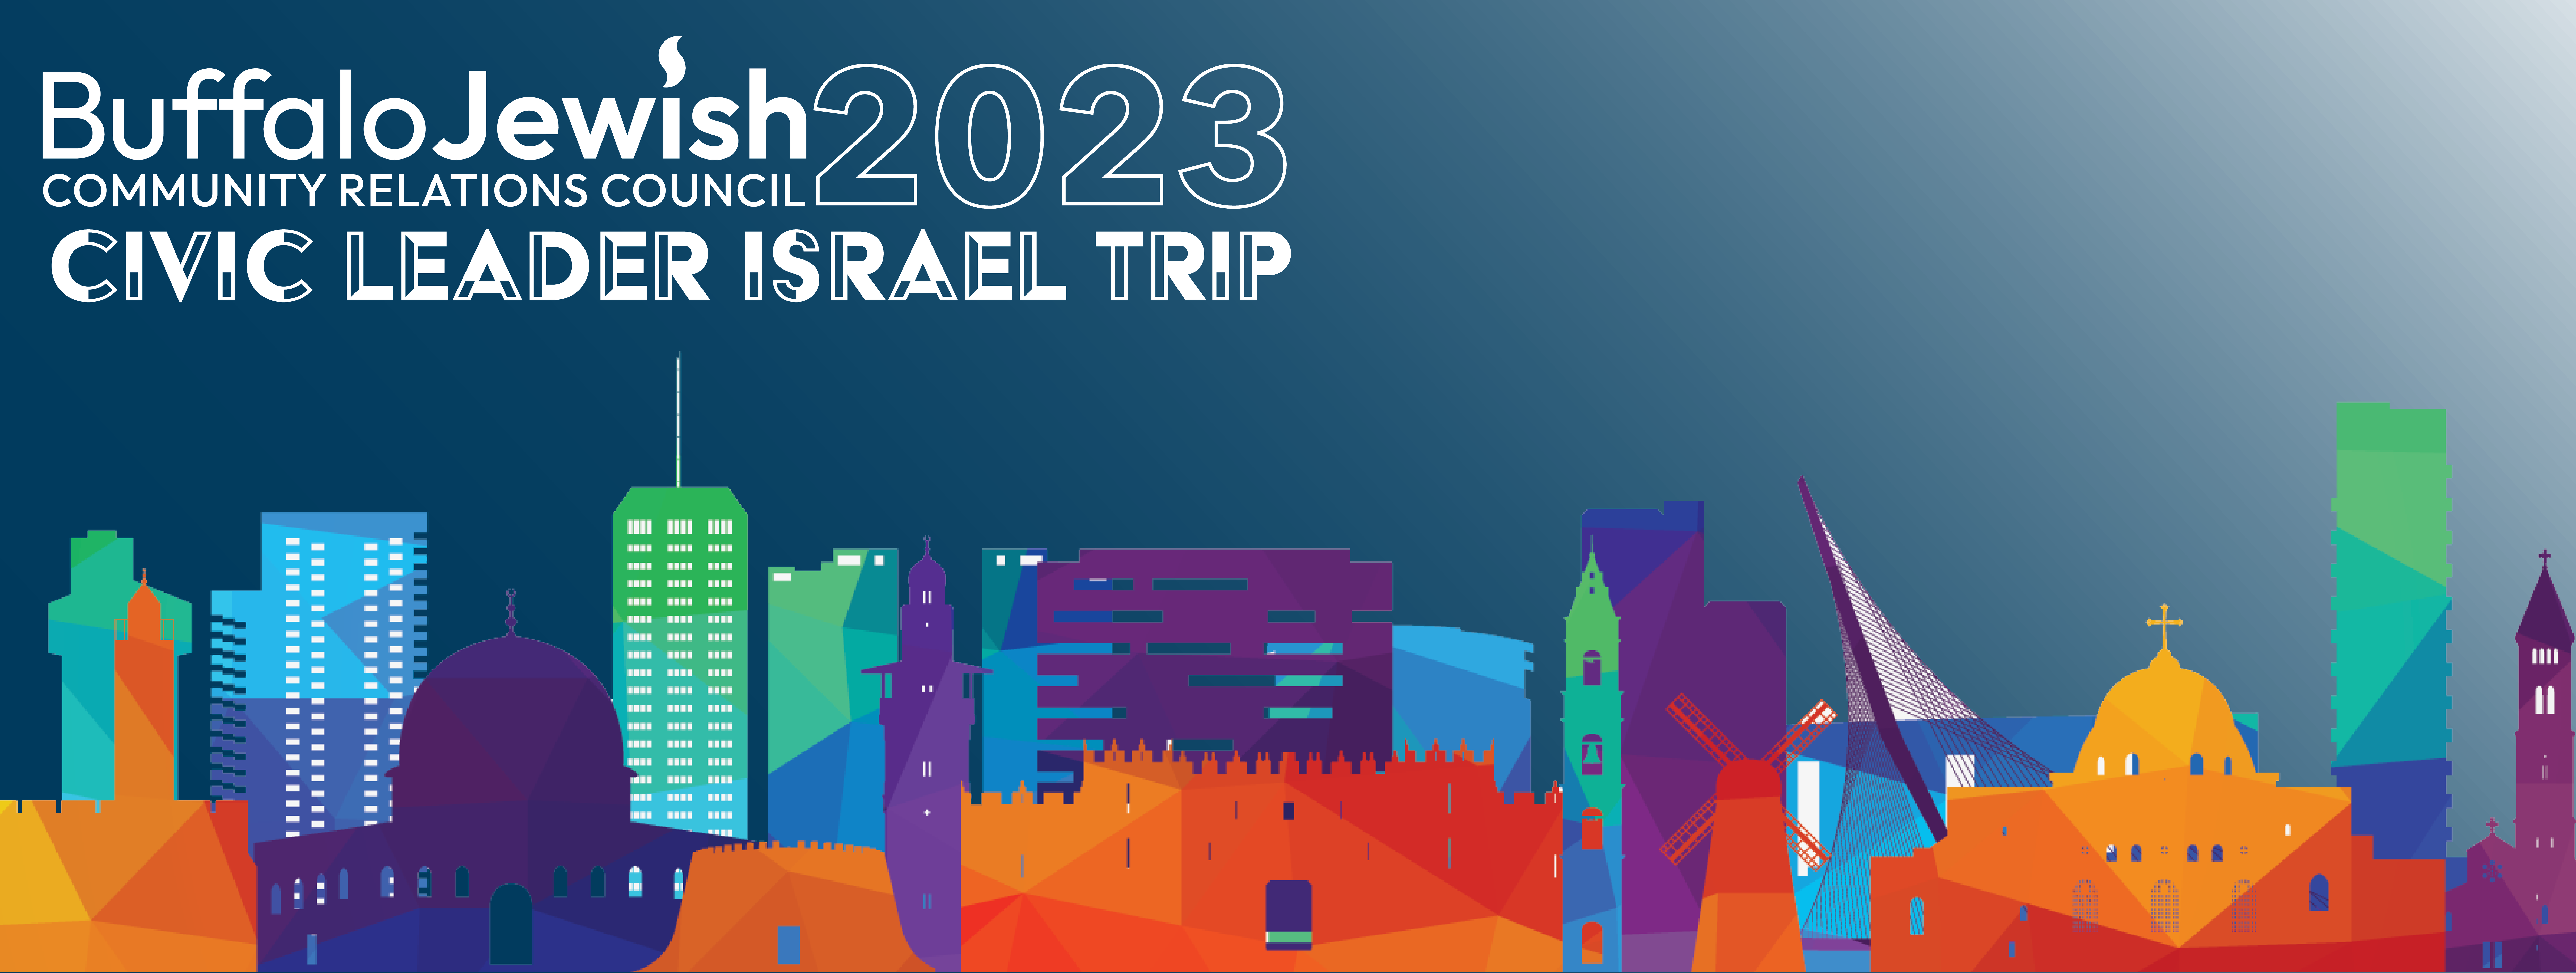 Civic Leaders Head to Israel - 2023 Civic Leader Israel Trip header 2 updated